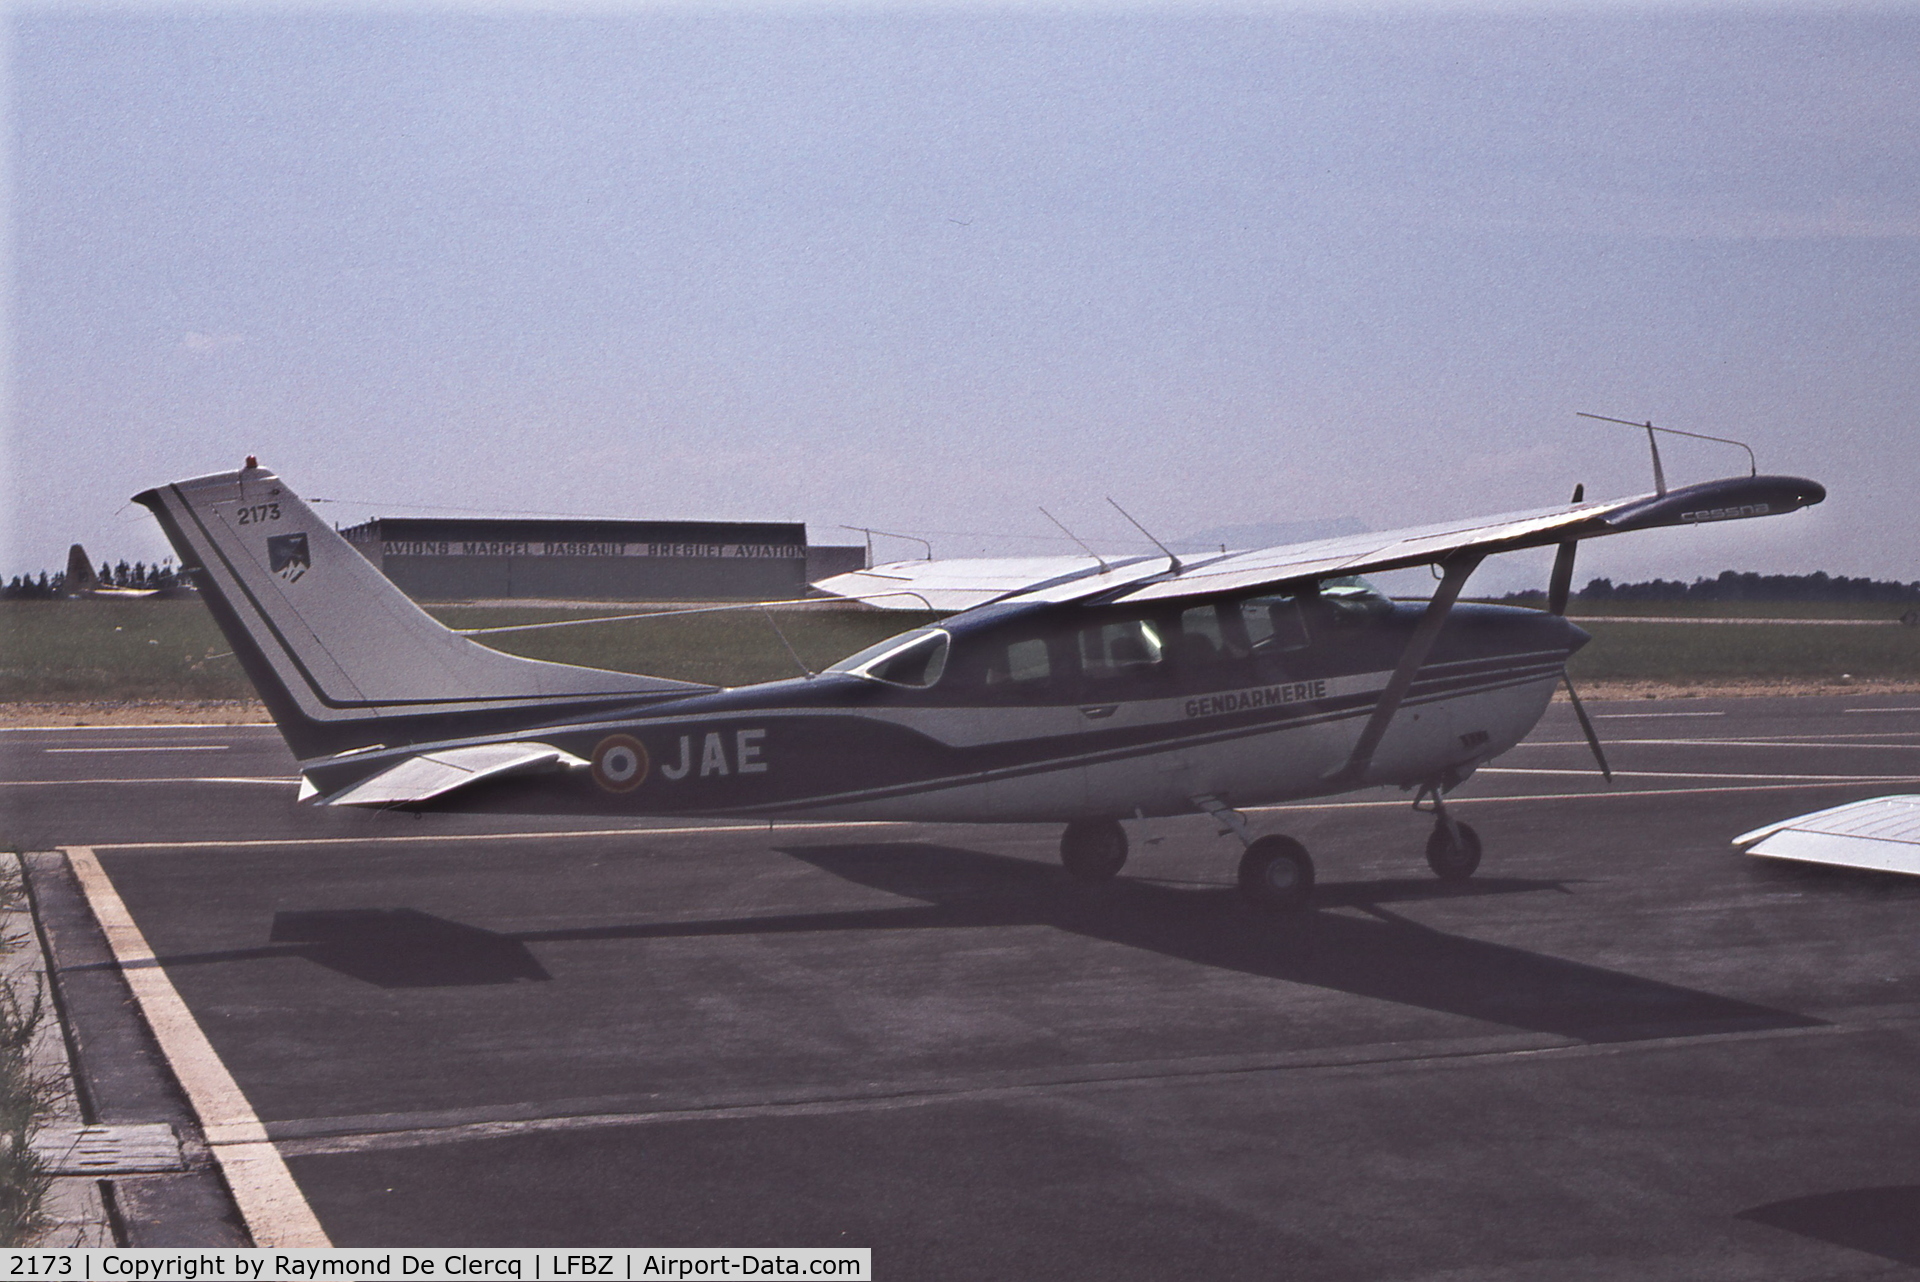 2173, 1973 Cessna U206F Stationair C/N U20602173, Biarritz ,summer 1976.  Ex N7325Q and F-BRGK. Later became F-GNMG, G-GNMG, HB-CZA and HA-SVU.